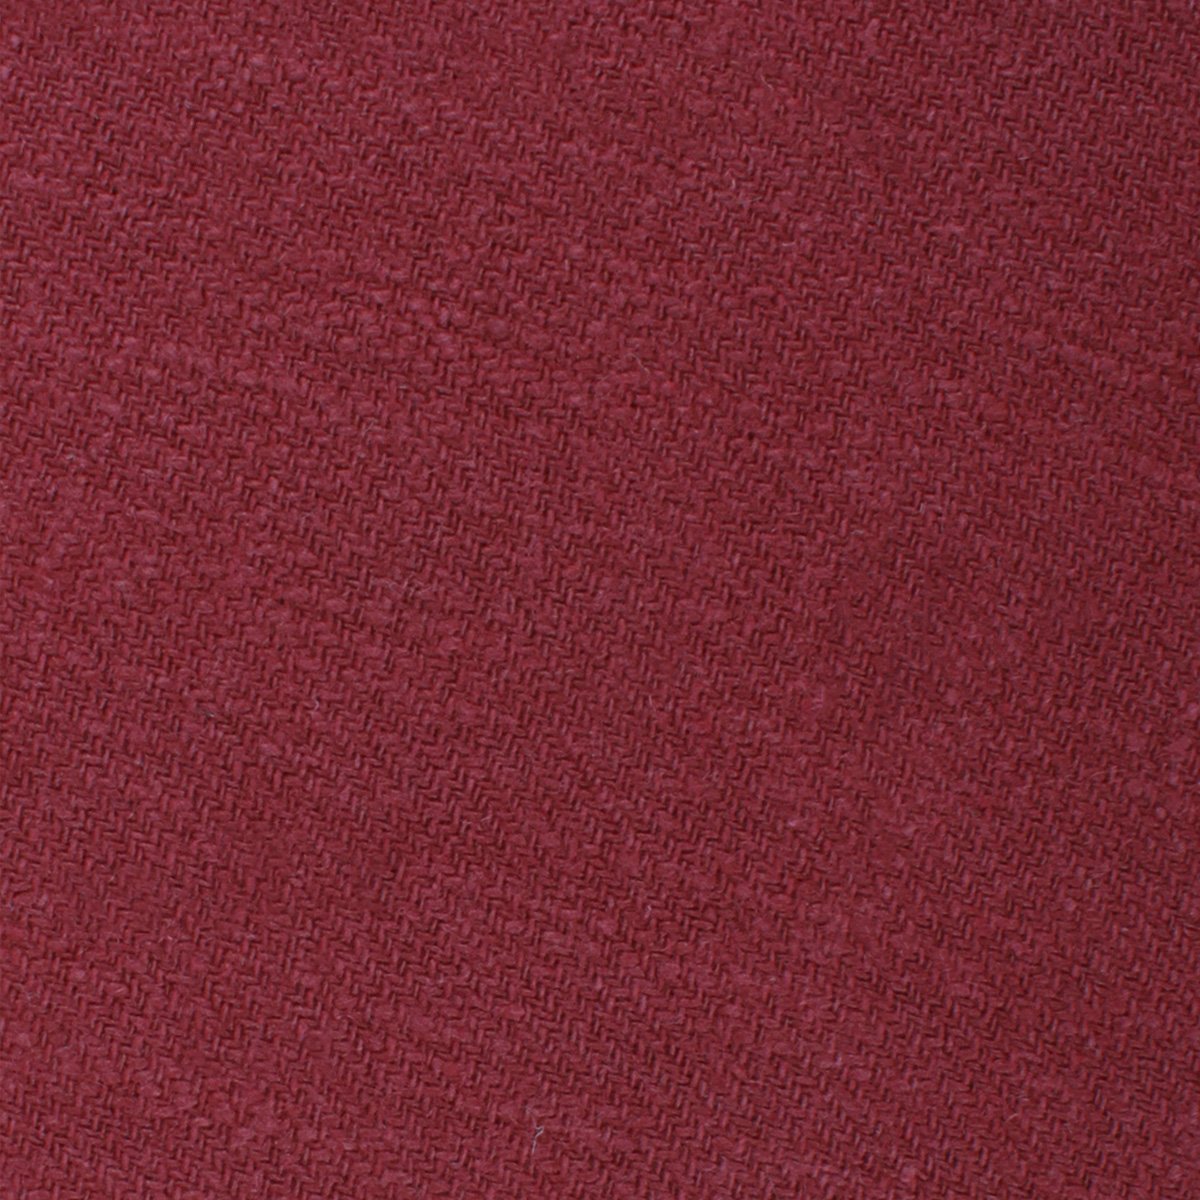 Cabernet Burgundy Linen Necktie Fabric